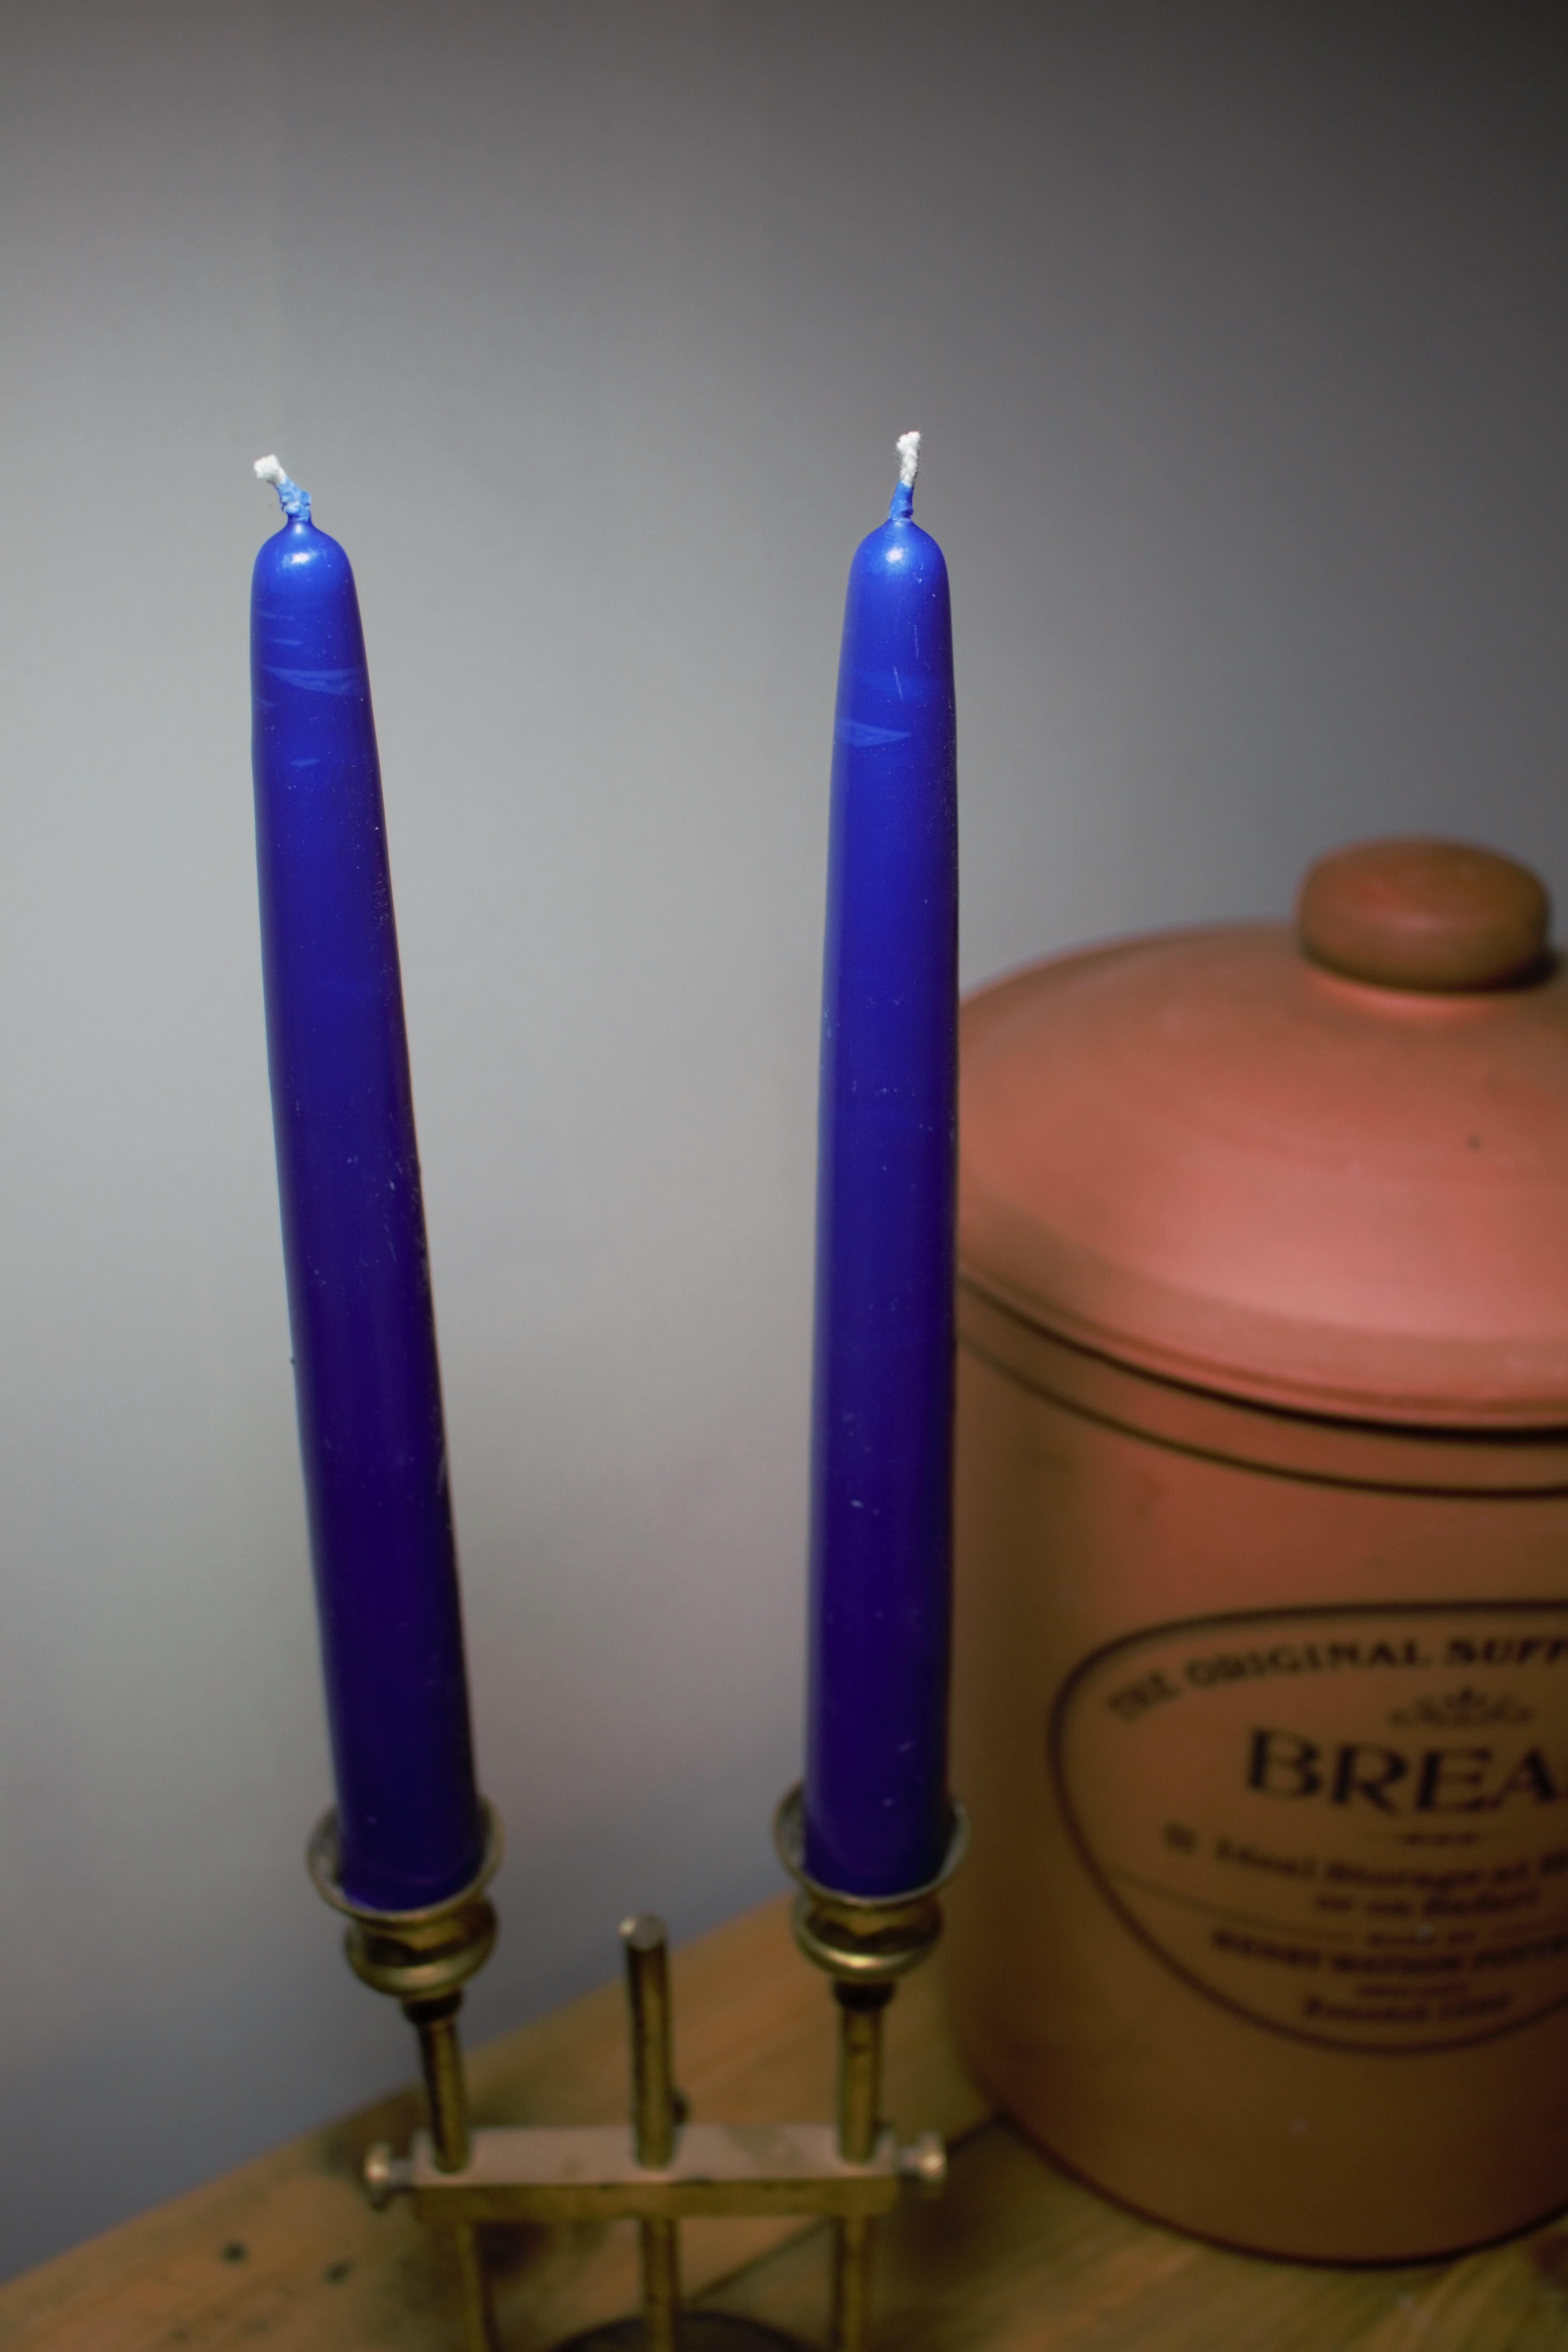 Cobalt blue beeswax candles